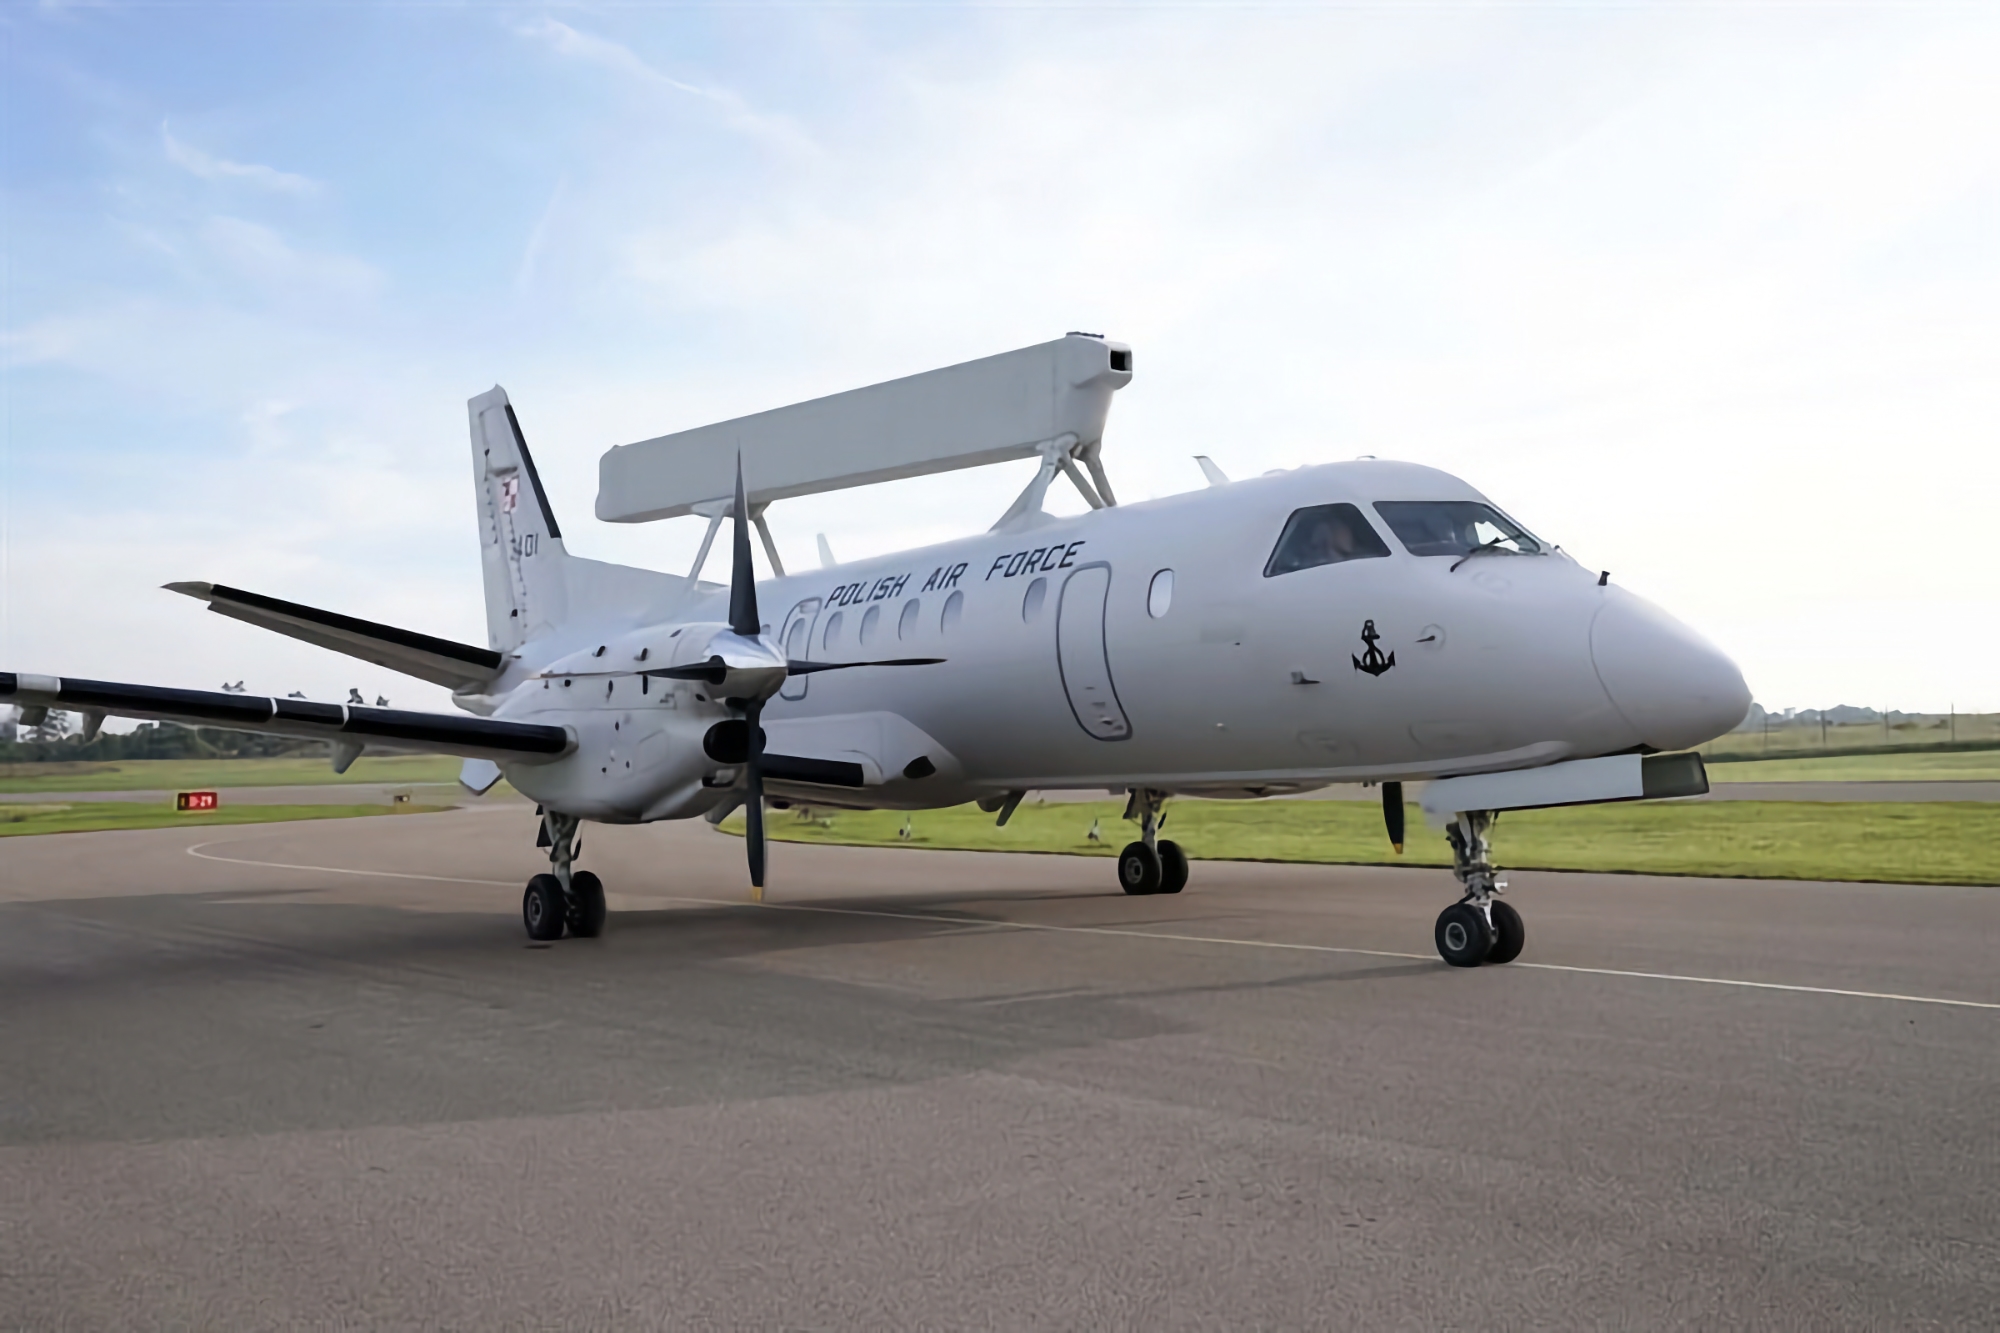 Польща отримала перший літак дальнього радіолокаційного виявлення та управління Saab 340B AEW-300